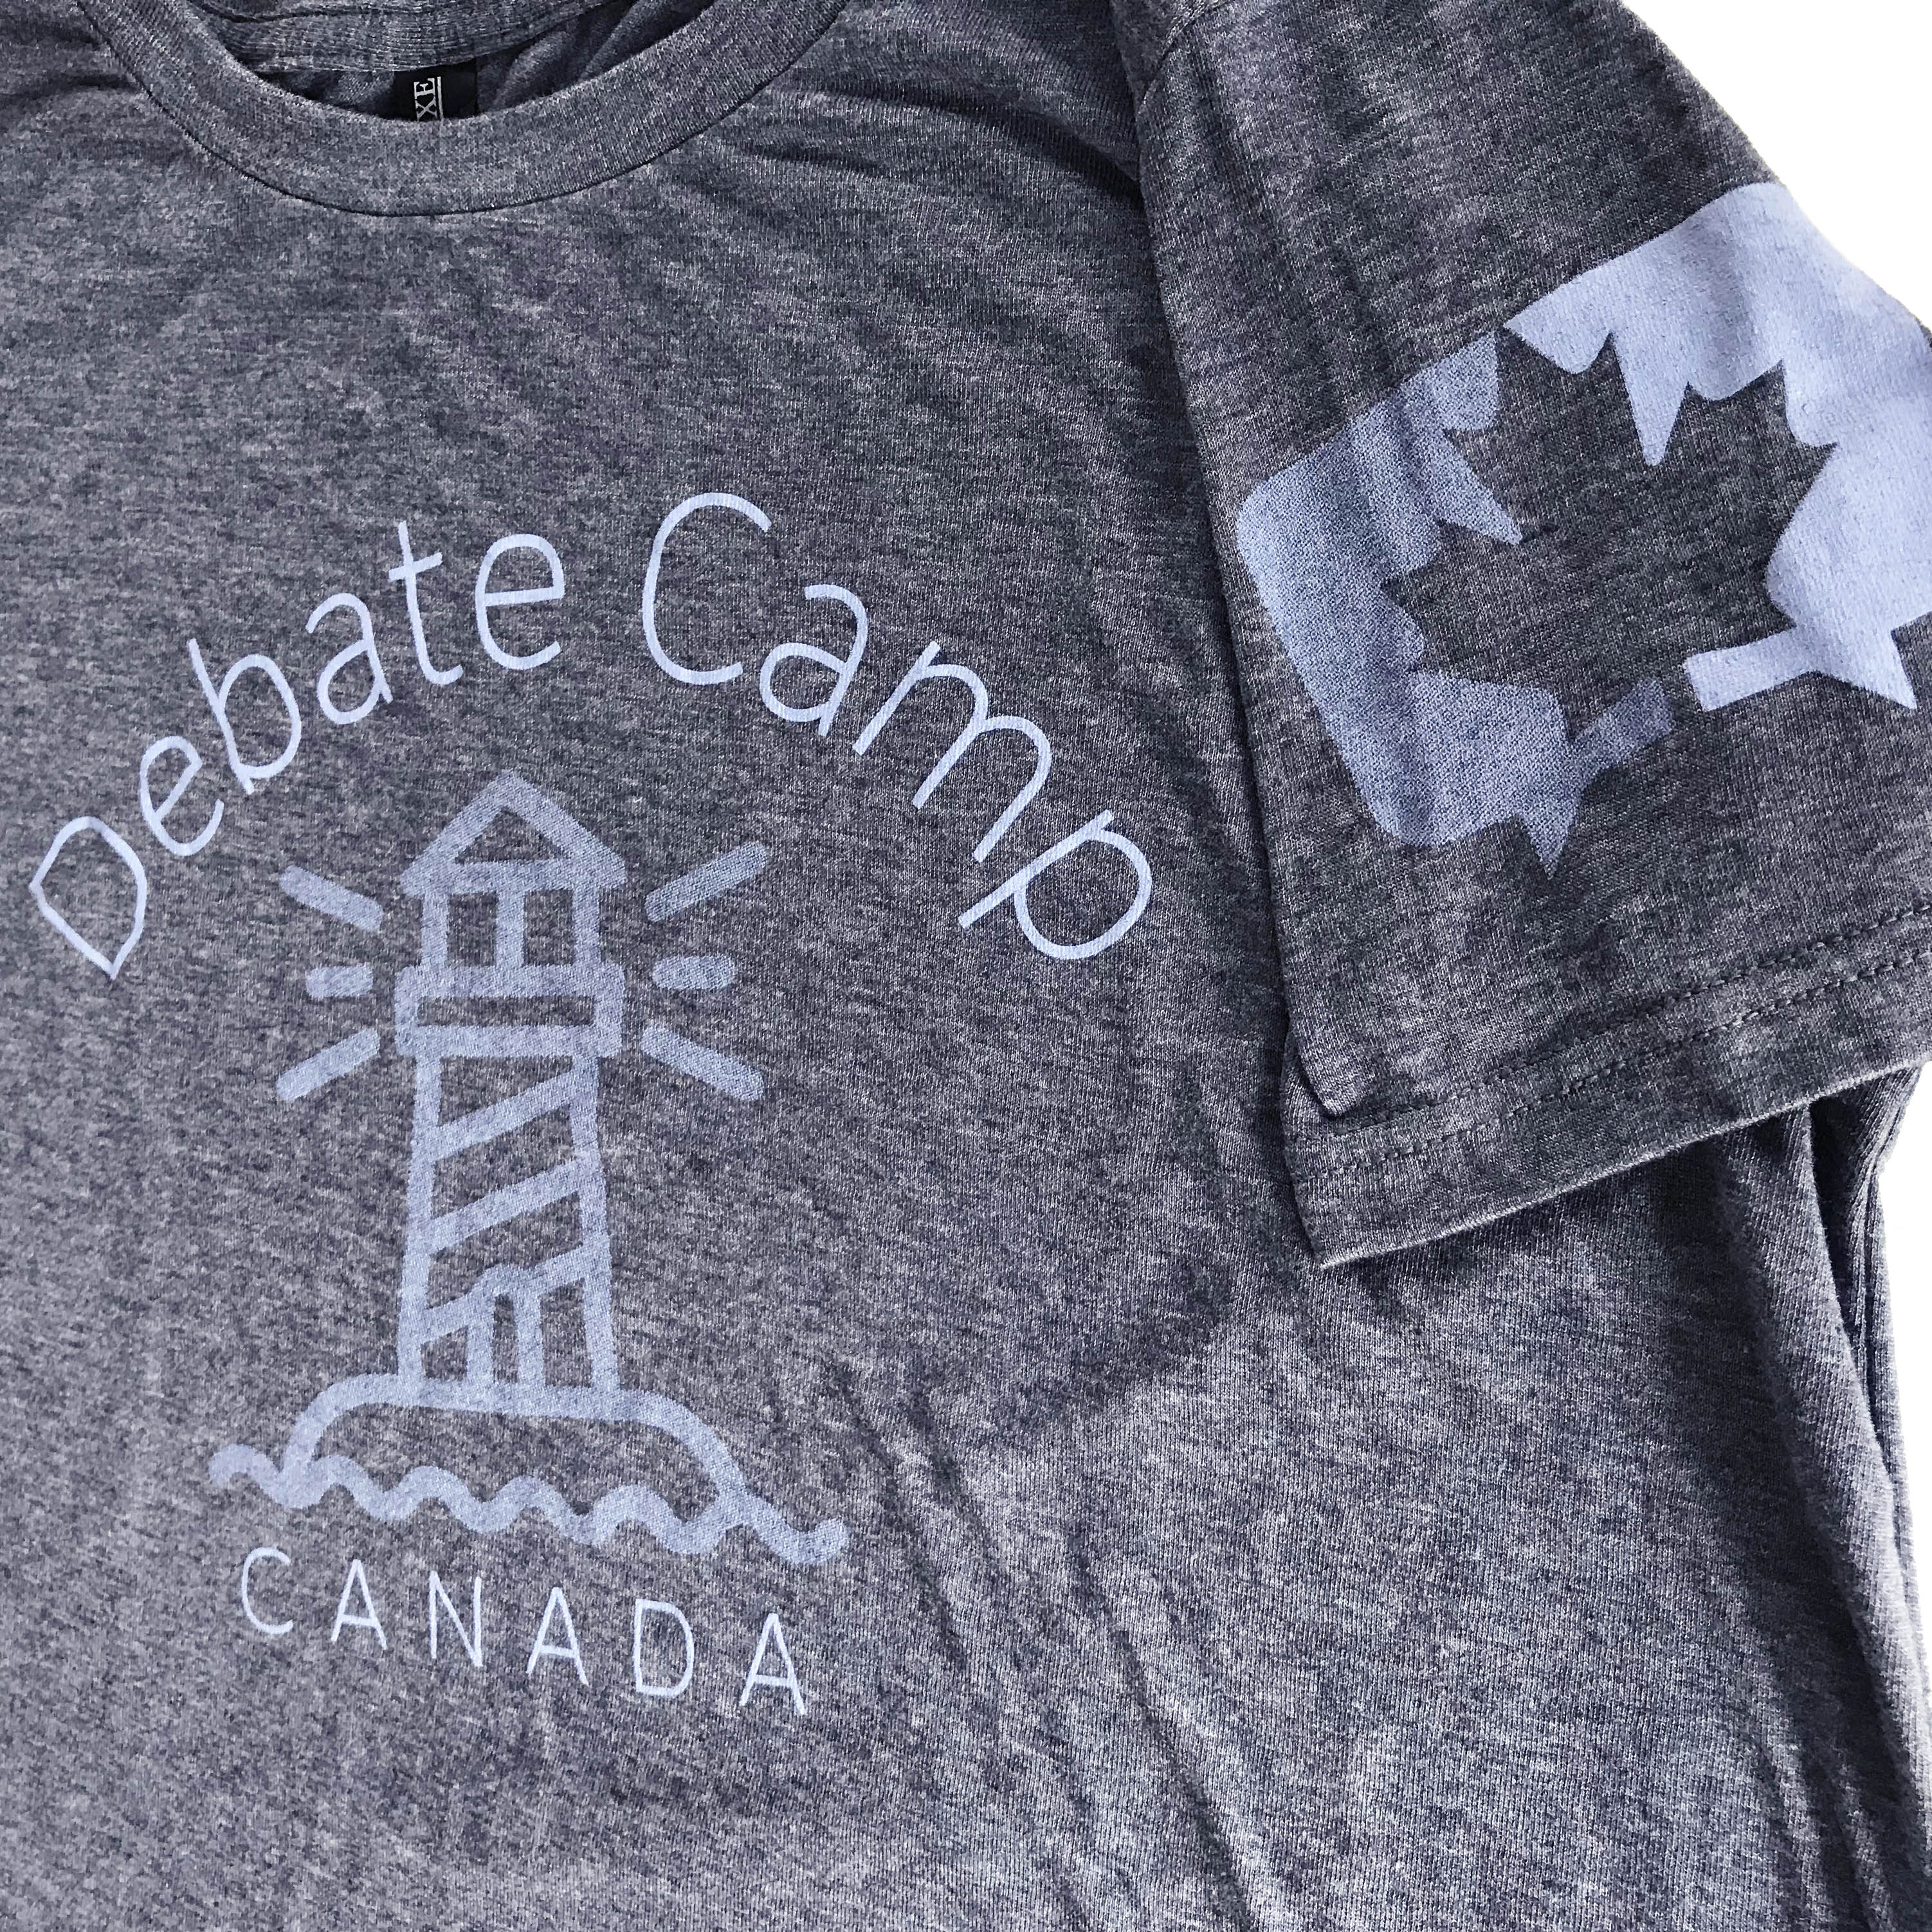 Debate Camp Canada